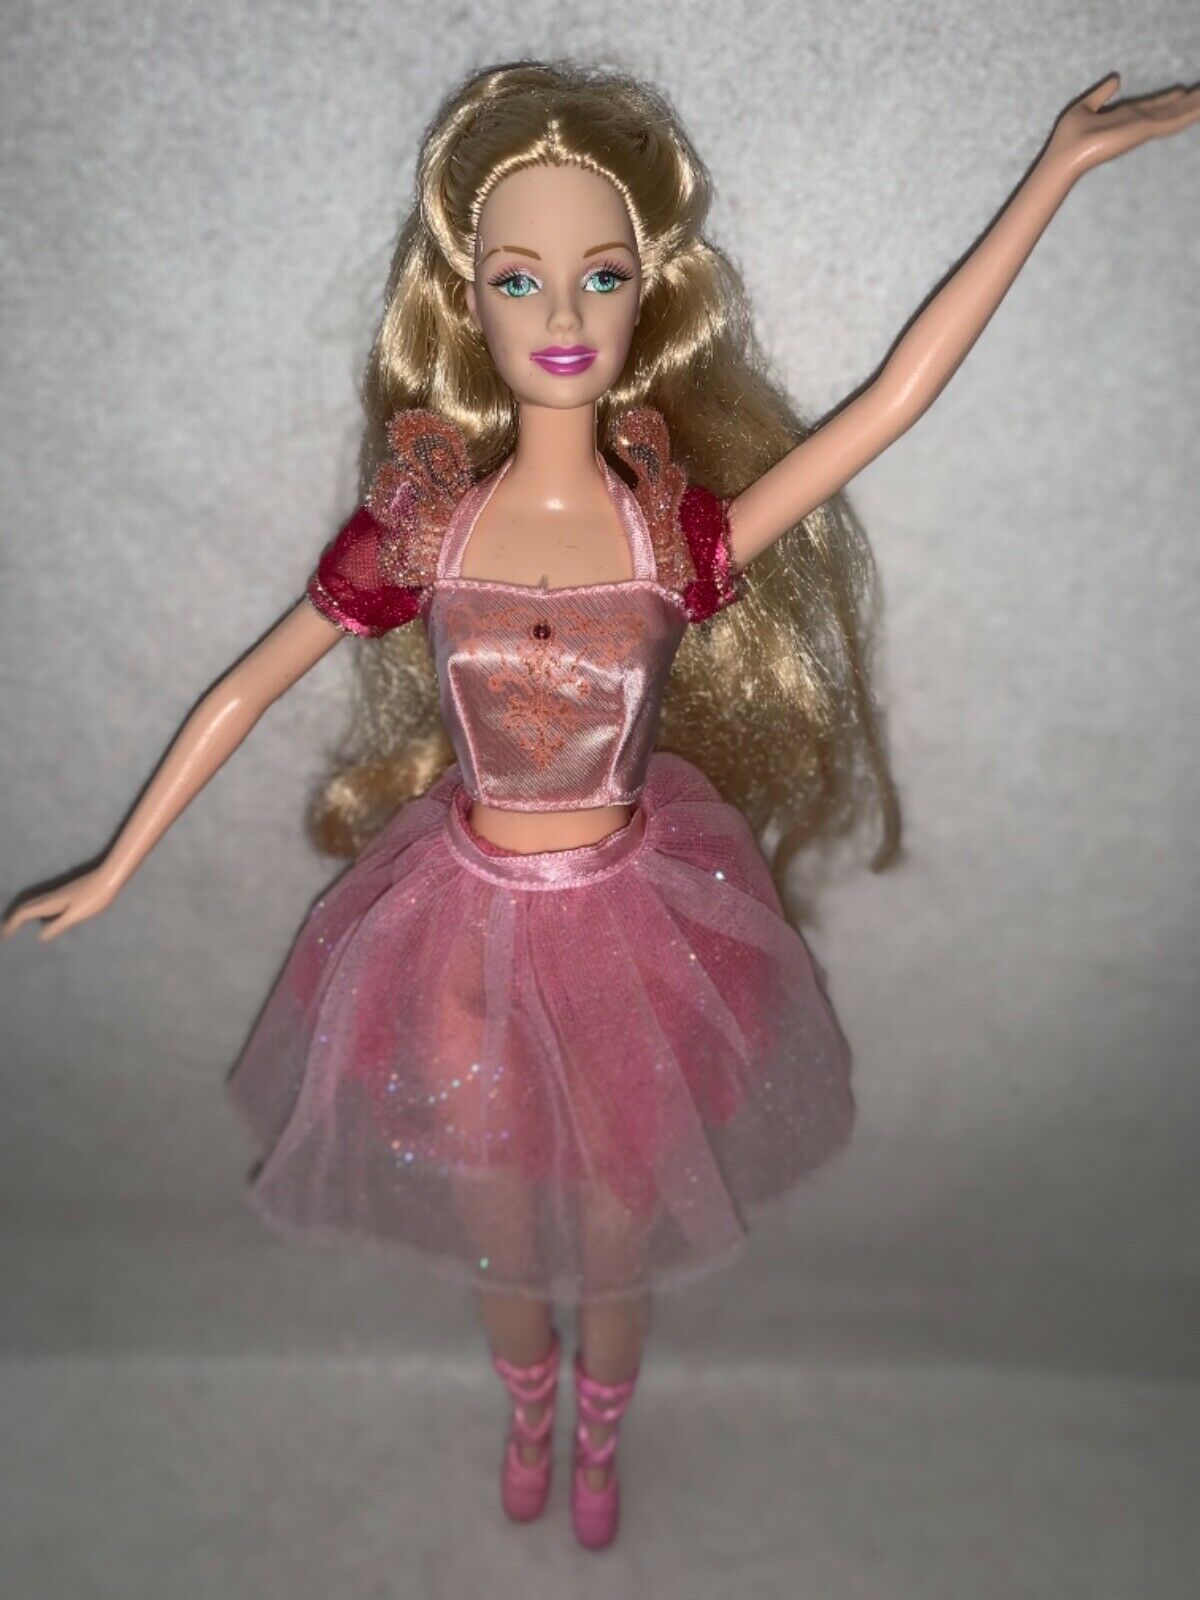 Mattel Barbie As The Nutcracker Clara Sugarplum Ballerina Doll Excellent